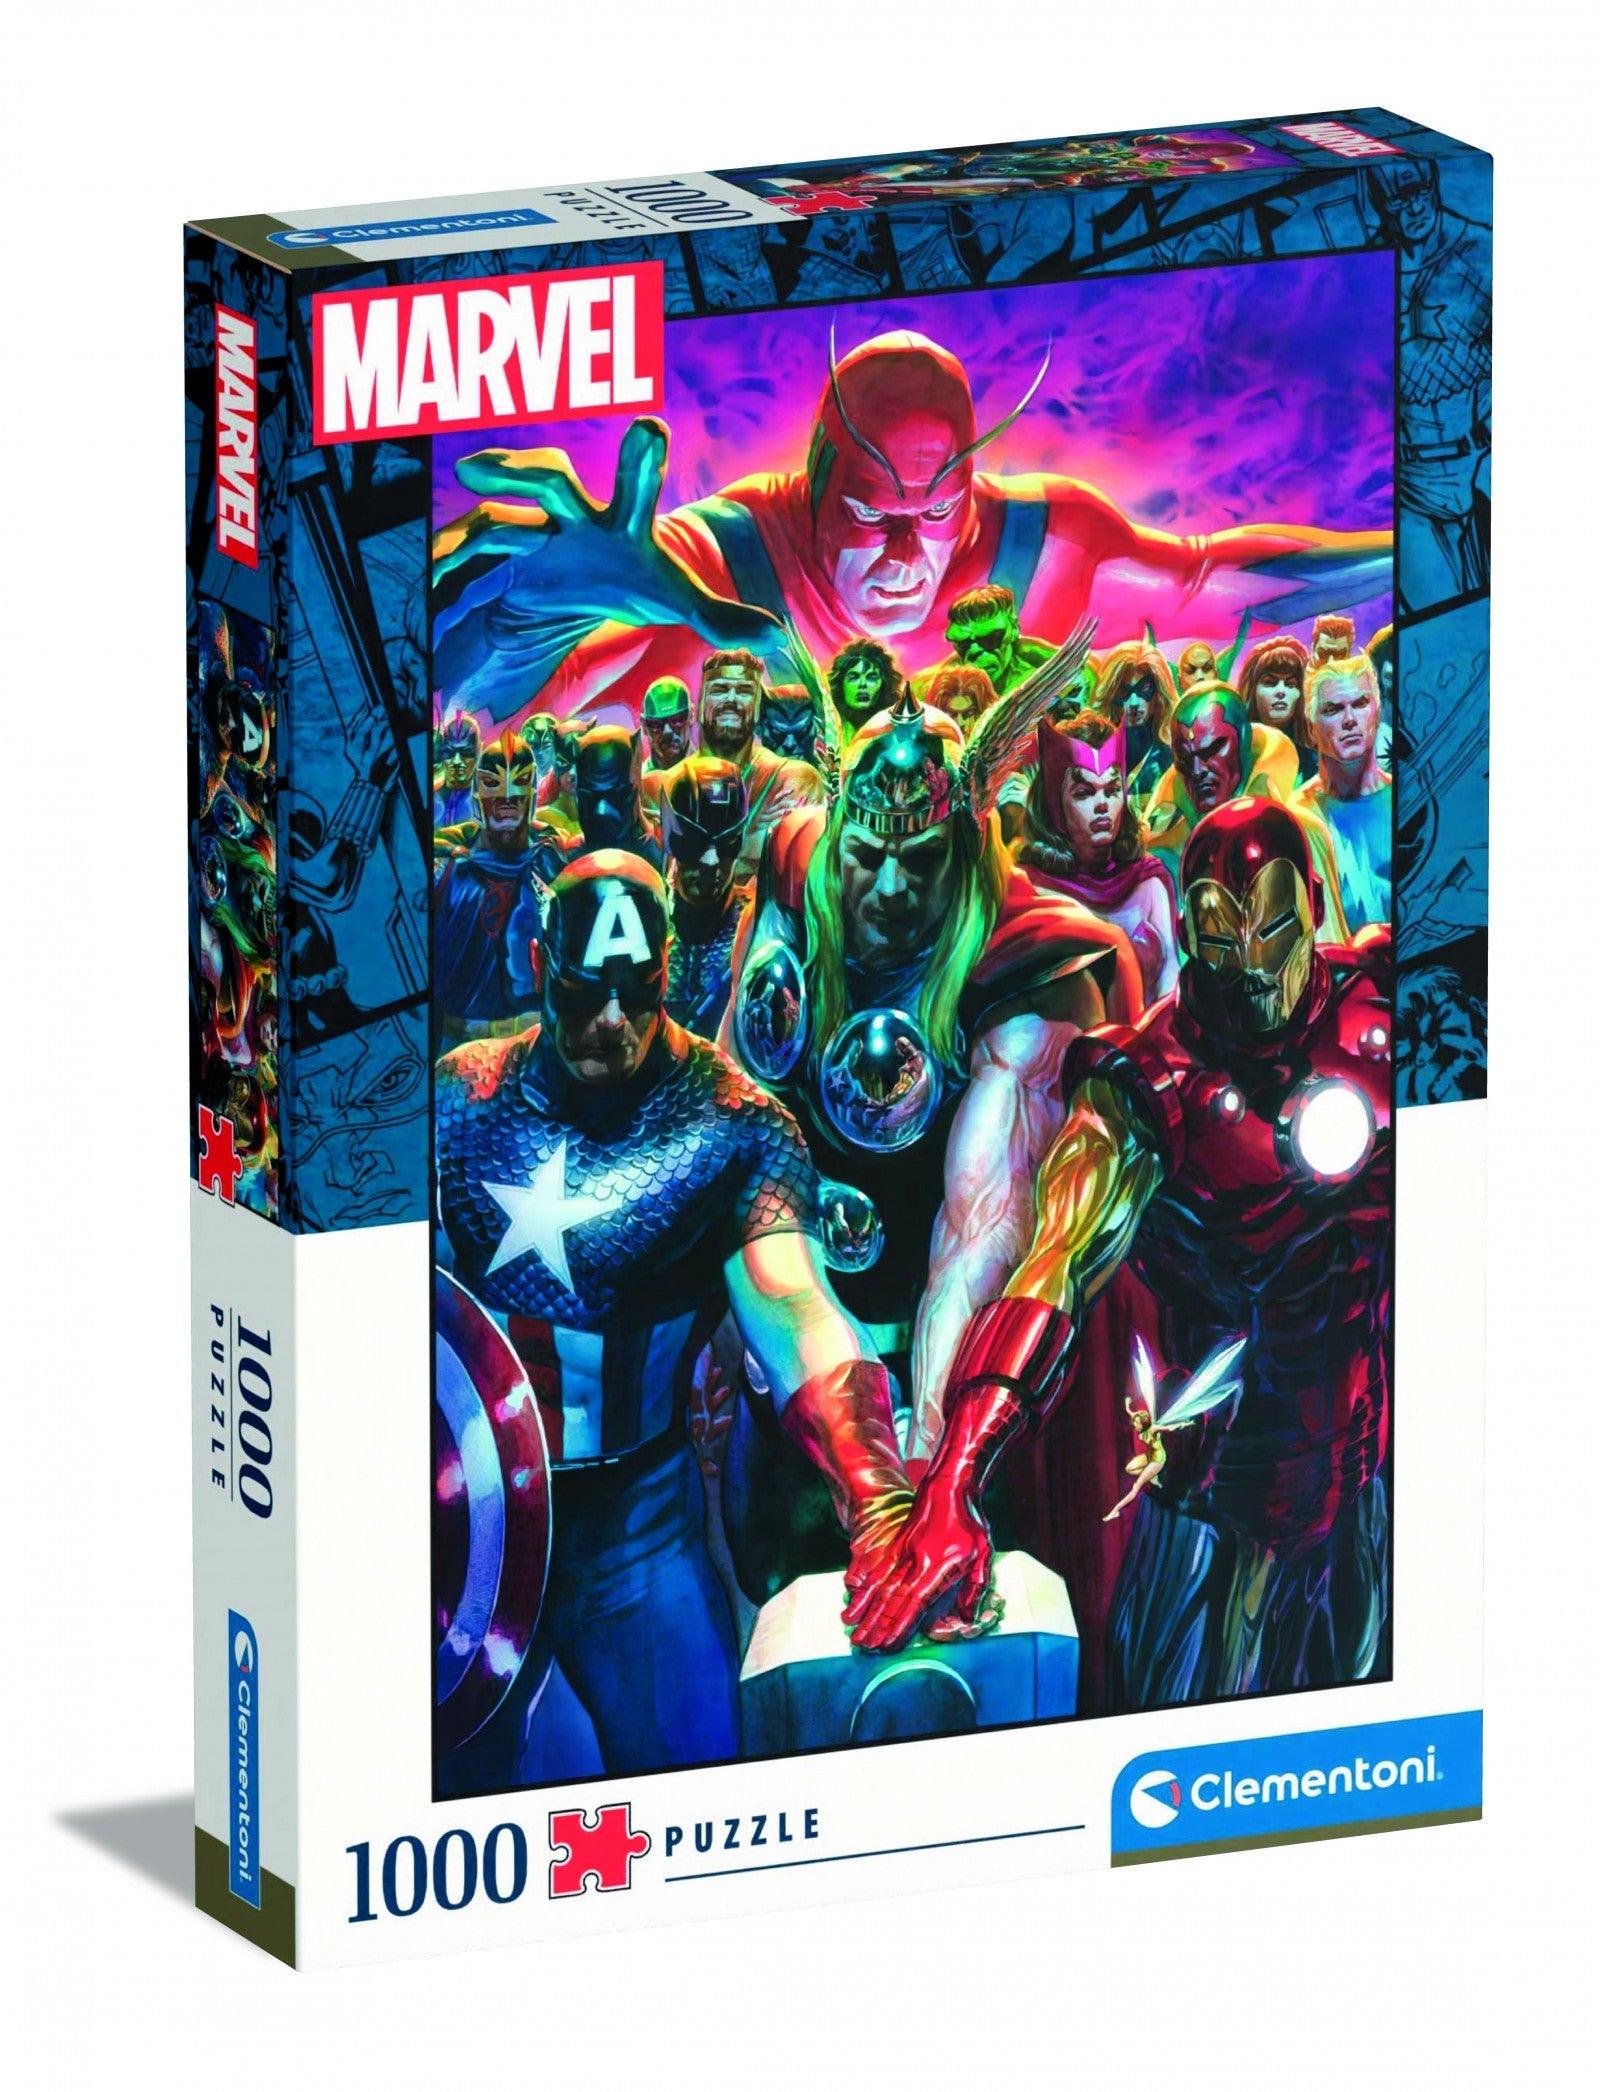 VR-97677 Clementoni Puzzle Marvel Avengers 1000 pieces - Clementoni - Titan Pop Culture